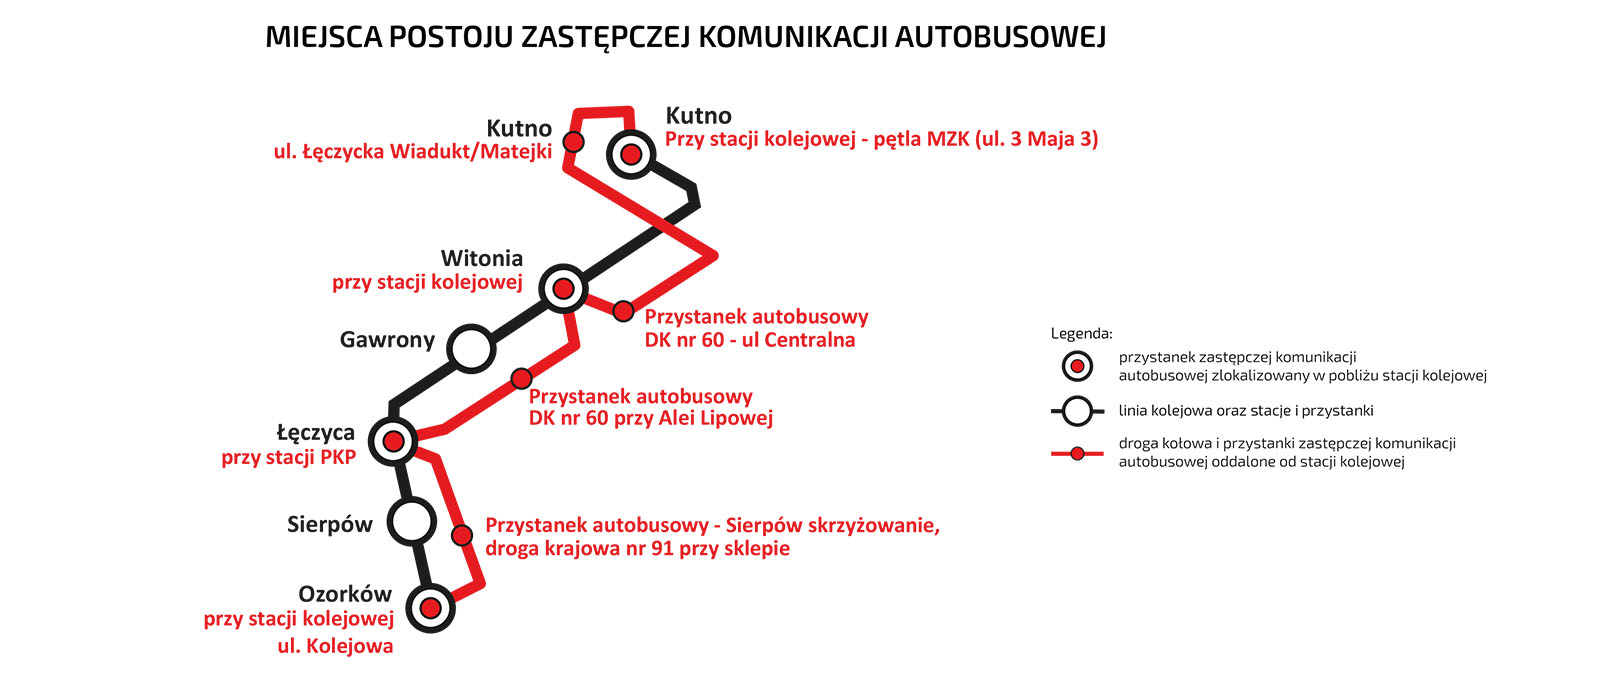 Schemat graficzny przedstawiający przystanki kolejowe i autobusowe wg powyższego opisu. 